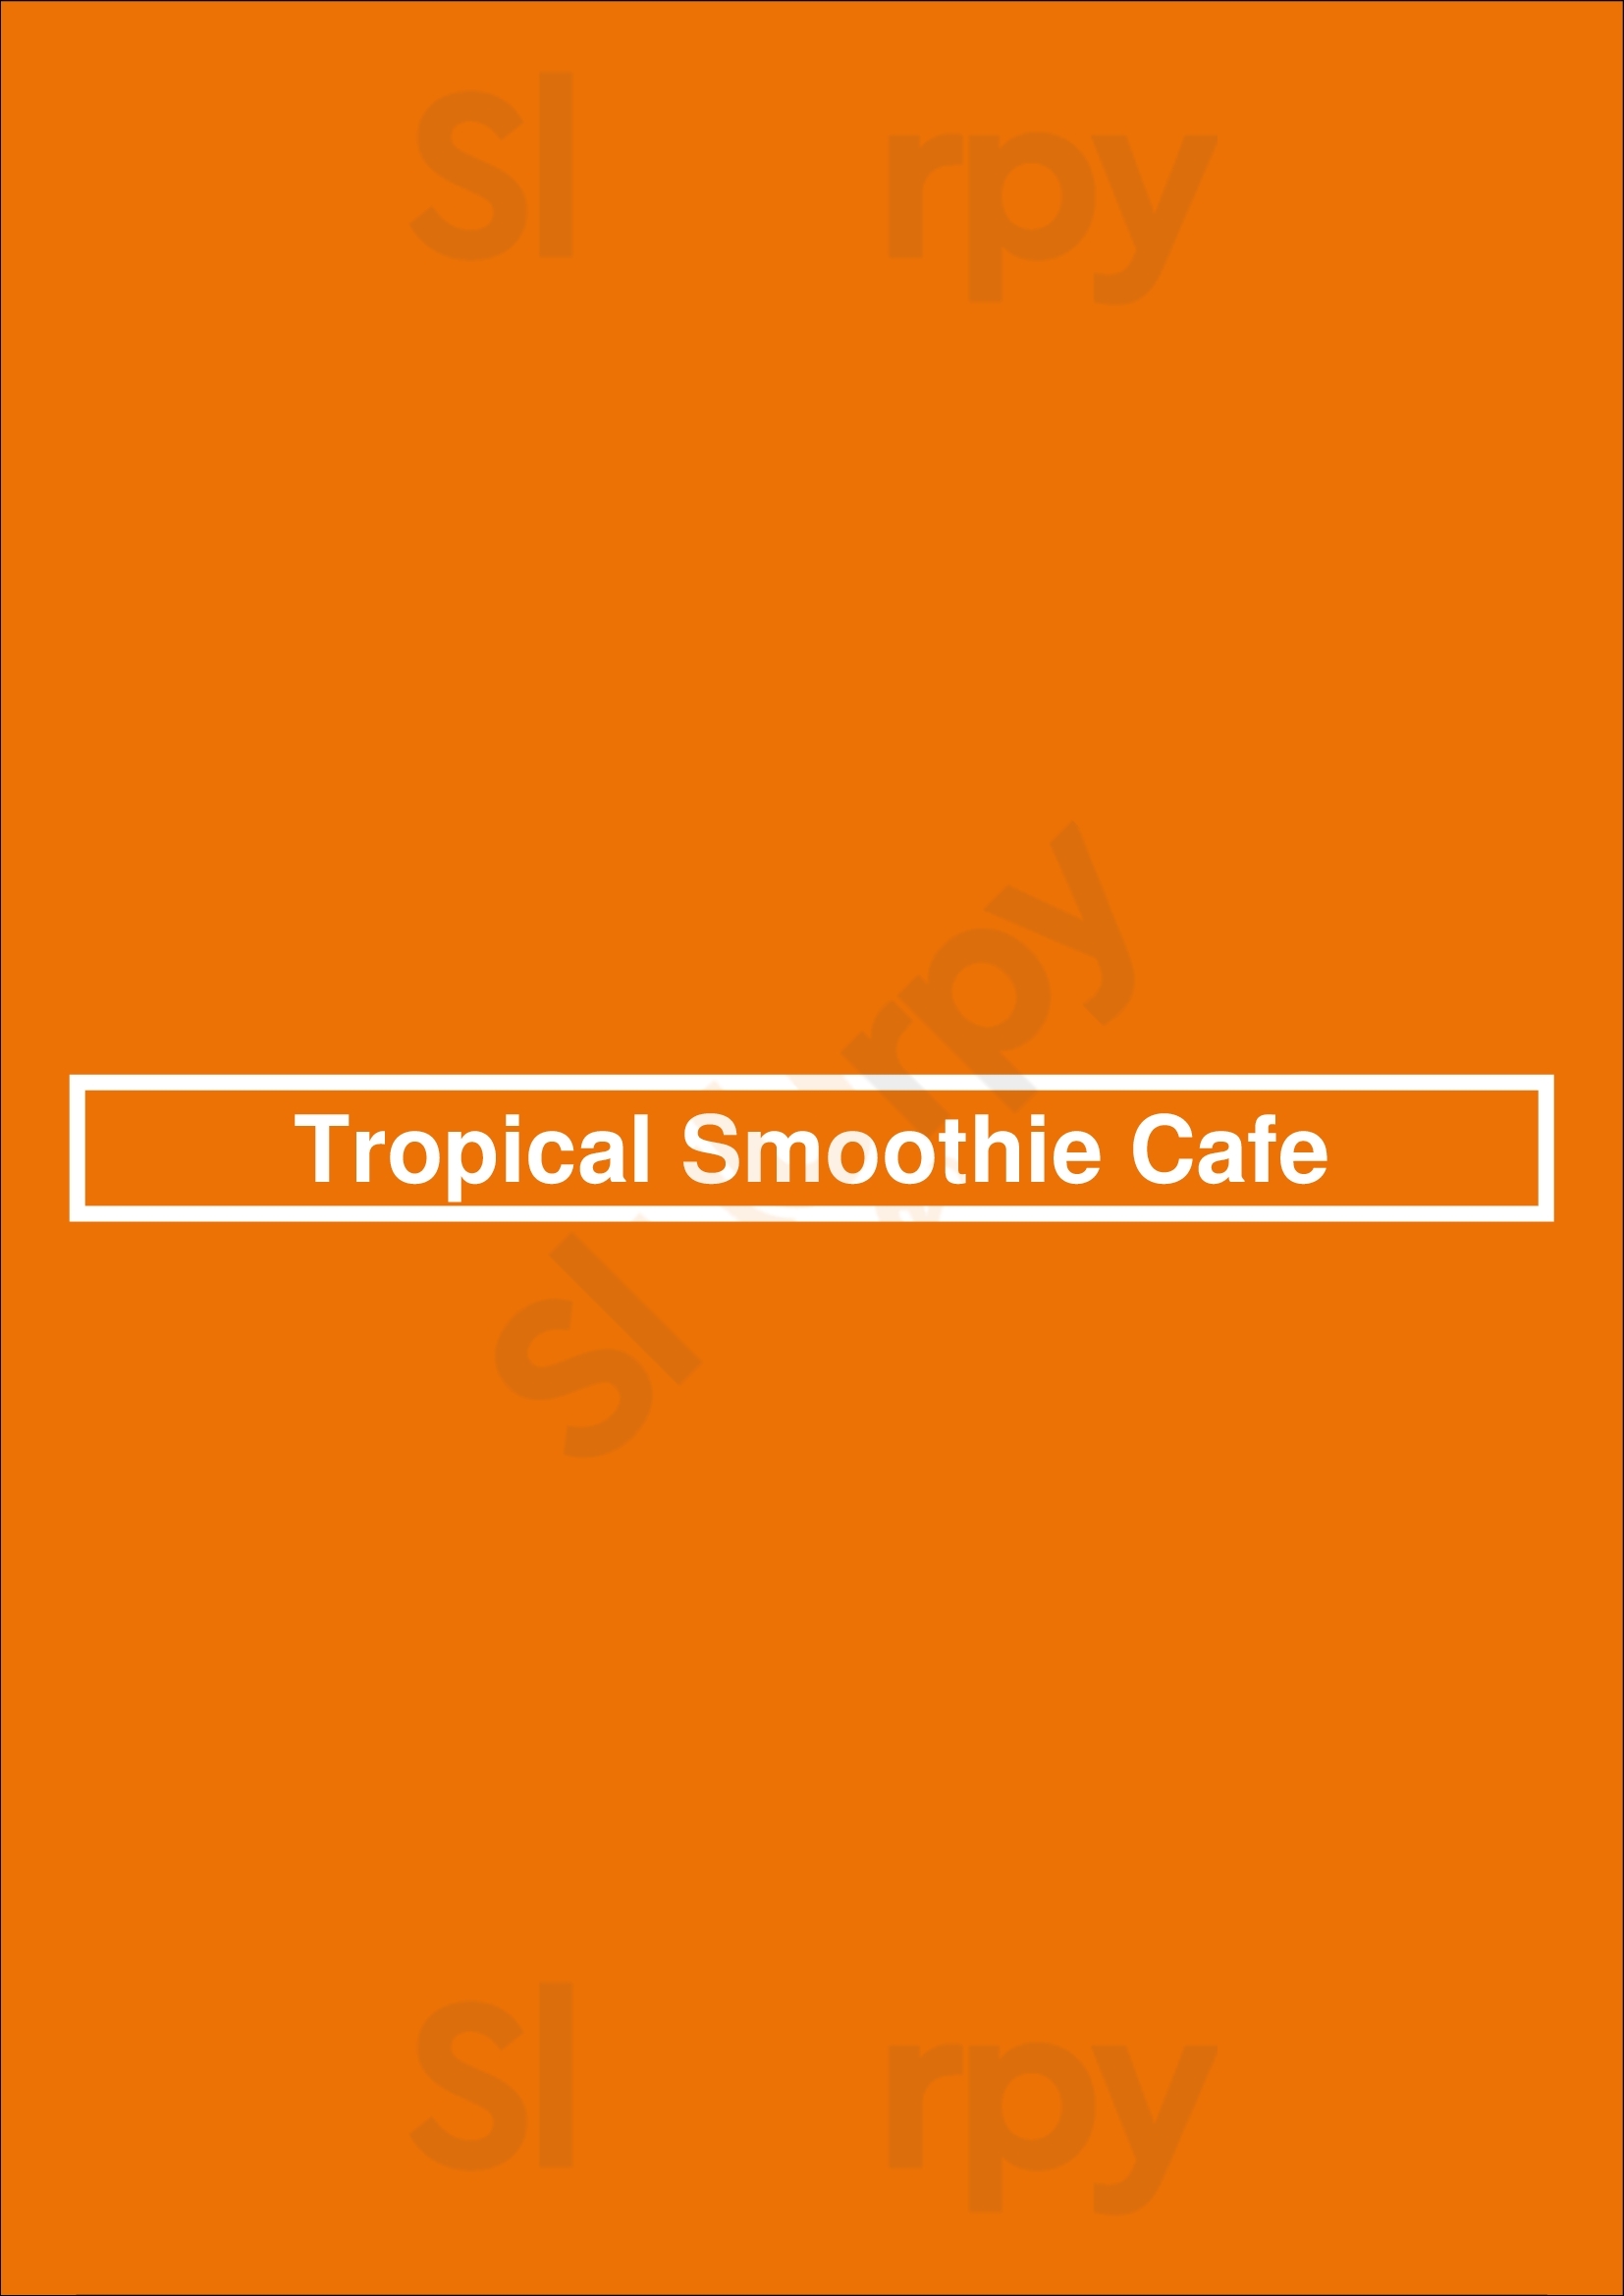 Tropical Smoothie Cafe Brandon Menu - 1